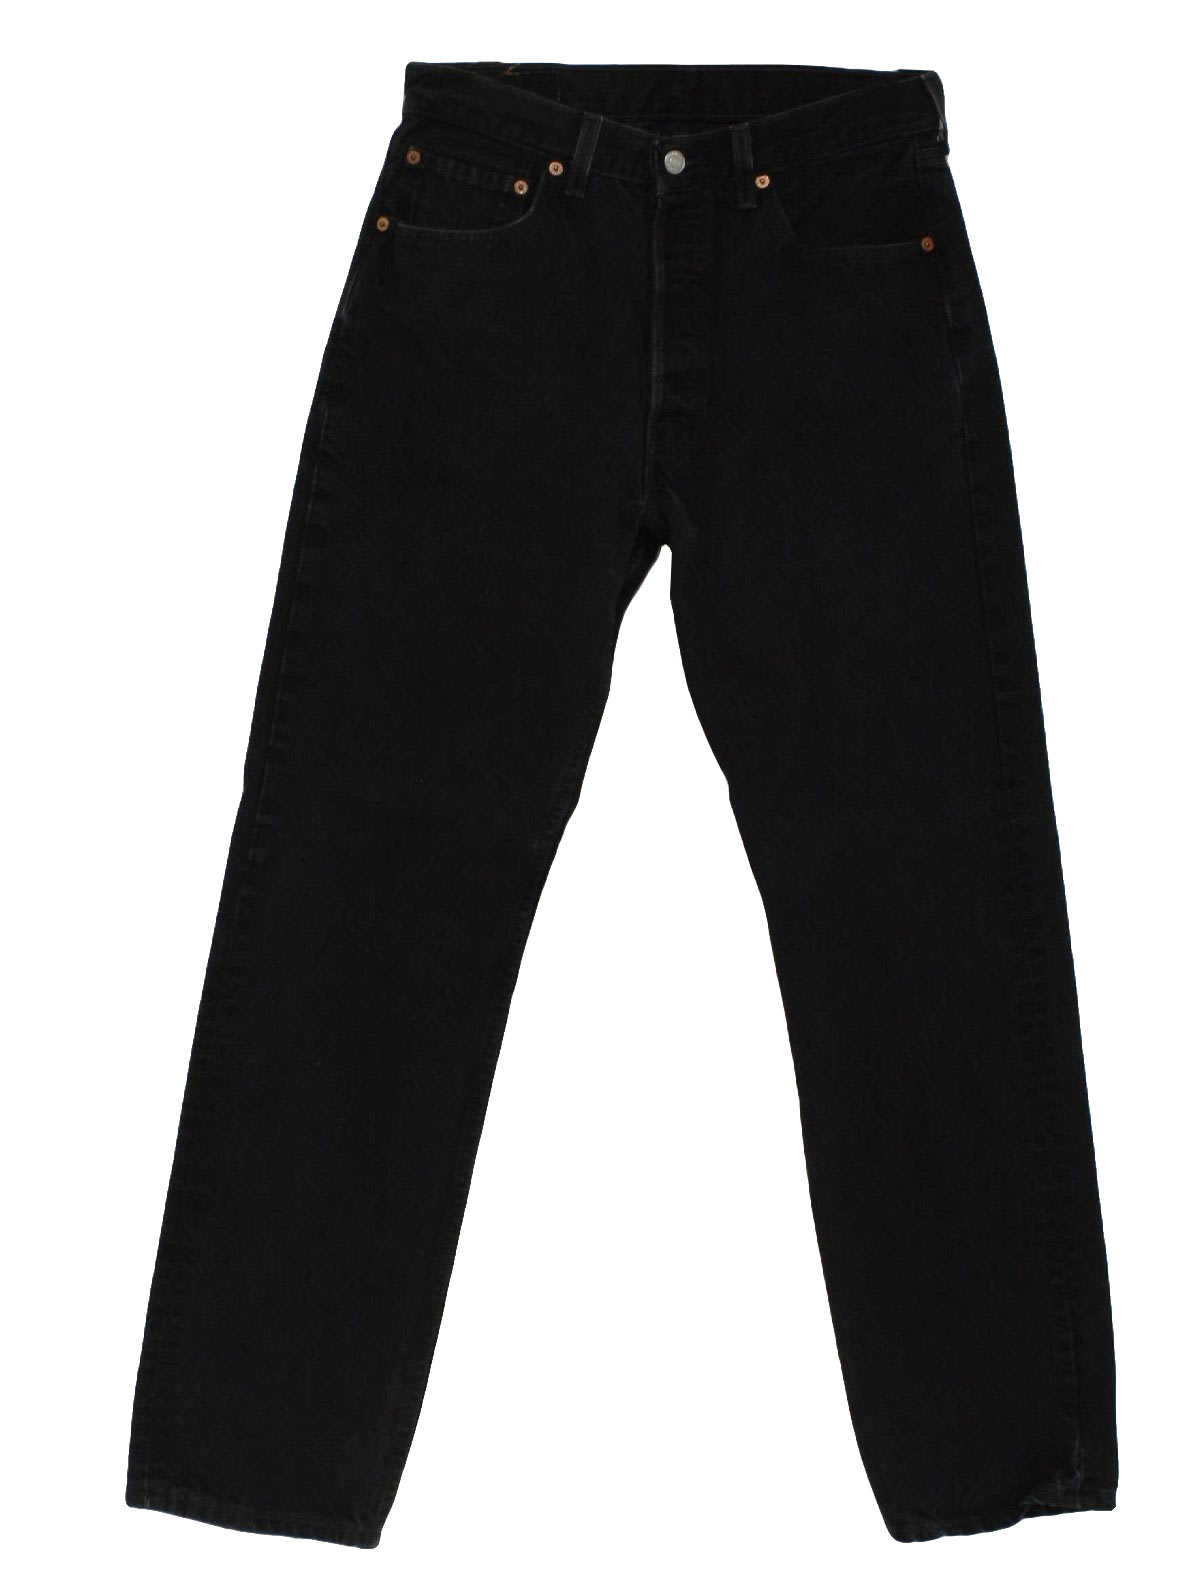 90s Retro Pants: 90s -Levis- Mens black cotton denim straight leg jeans ...